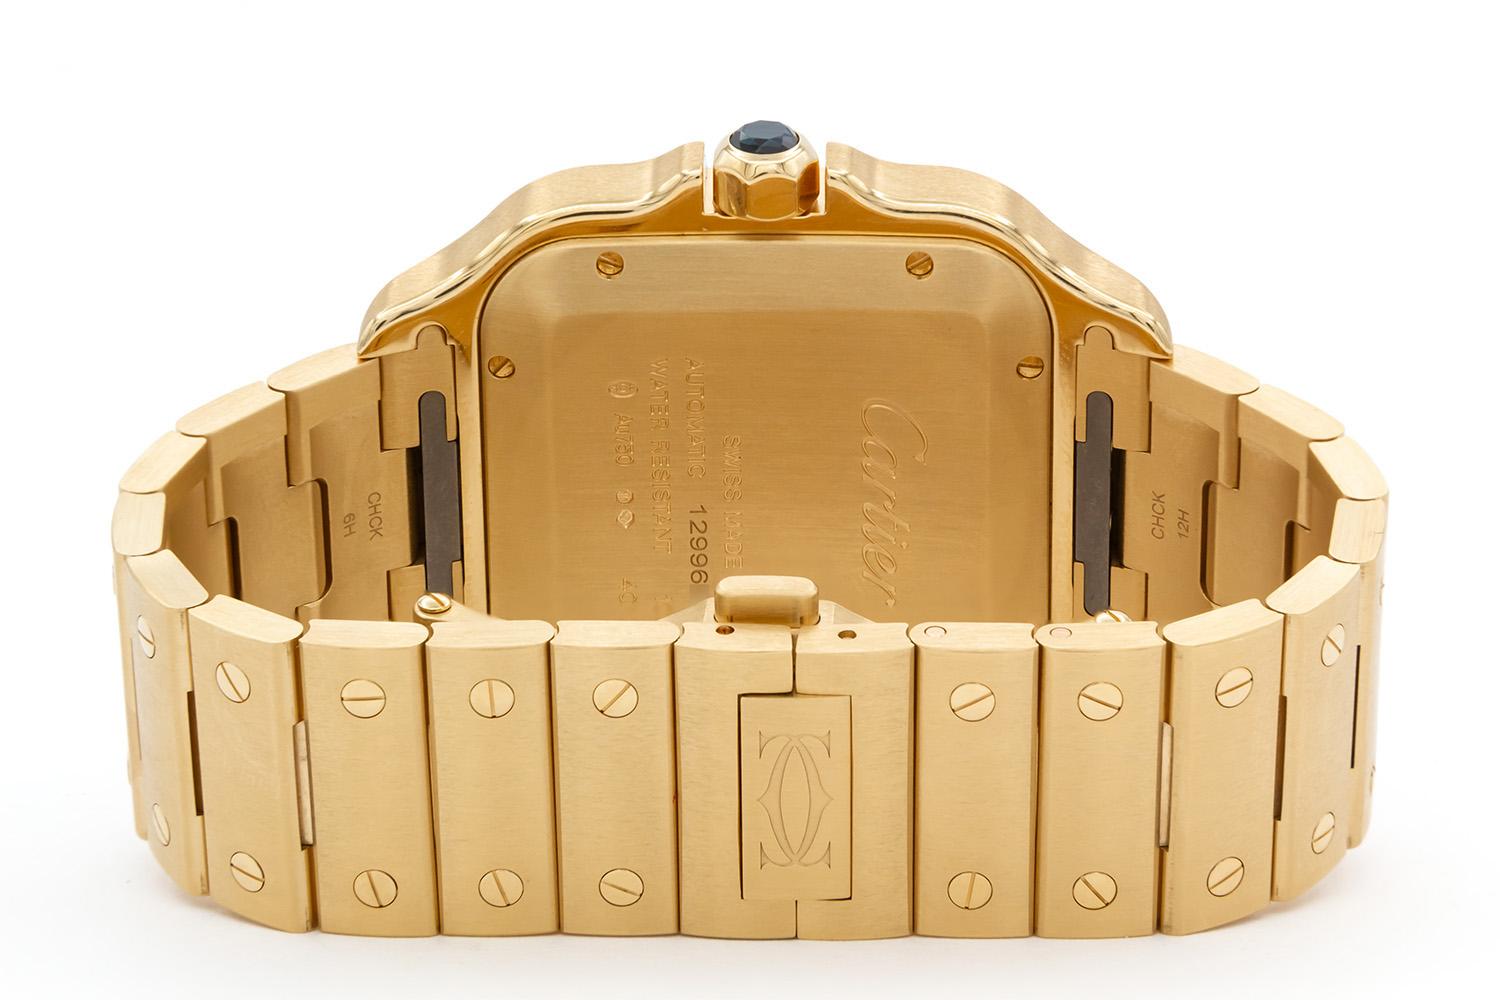 gold cartier watch